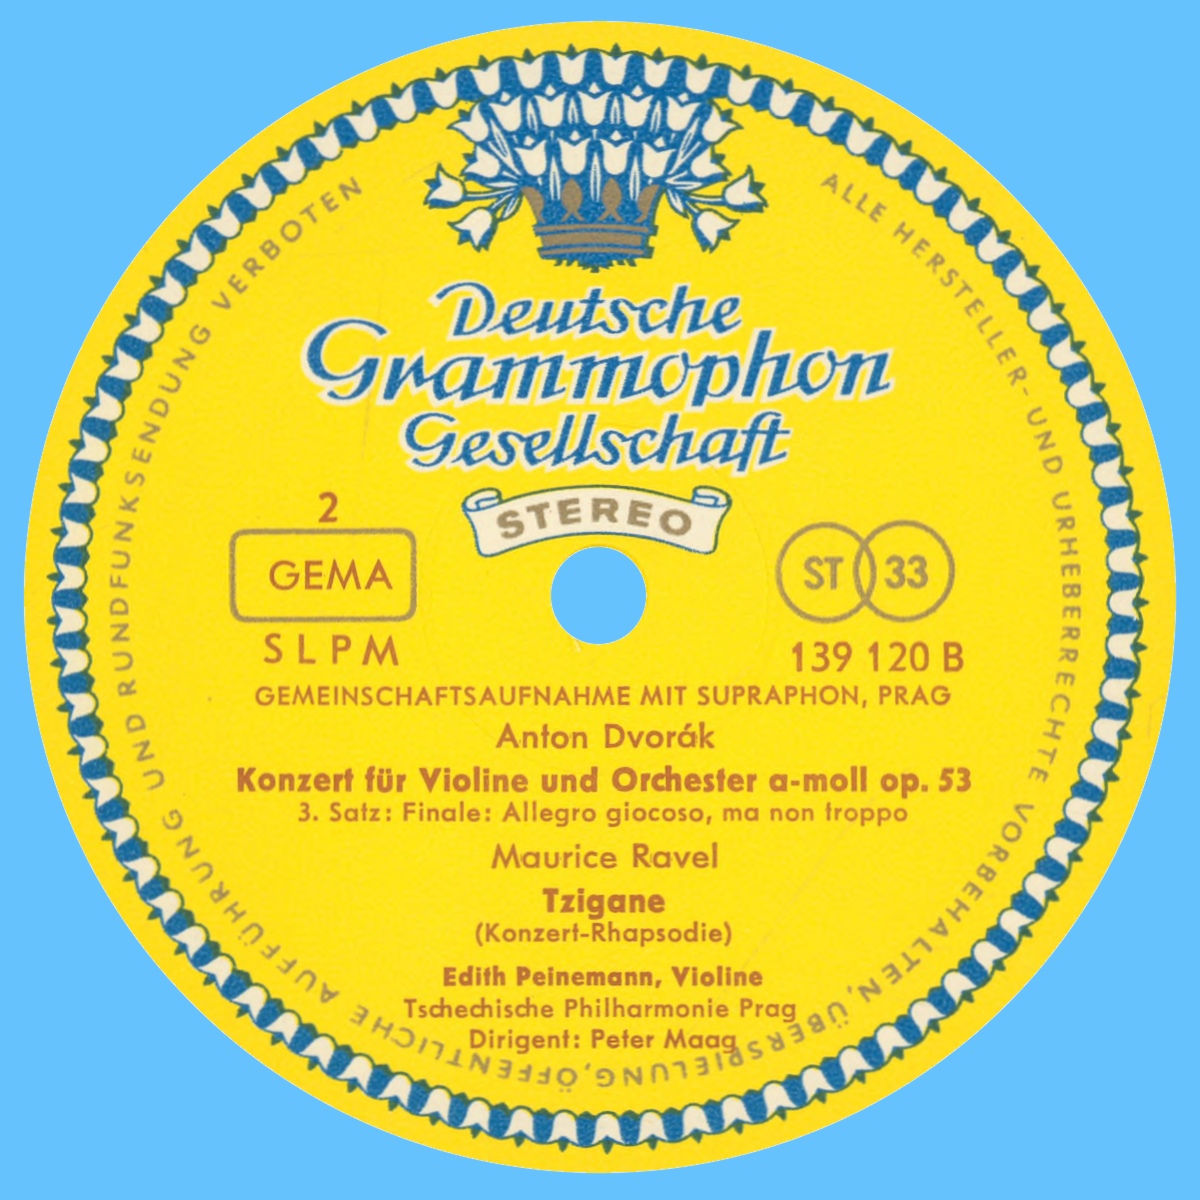 Étiquette verso du disque SLMP 193 120 de la Deutsche Grammophon Gesellschaft